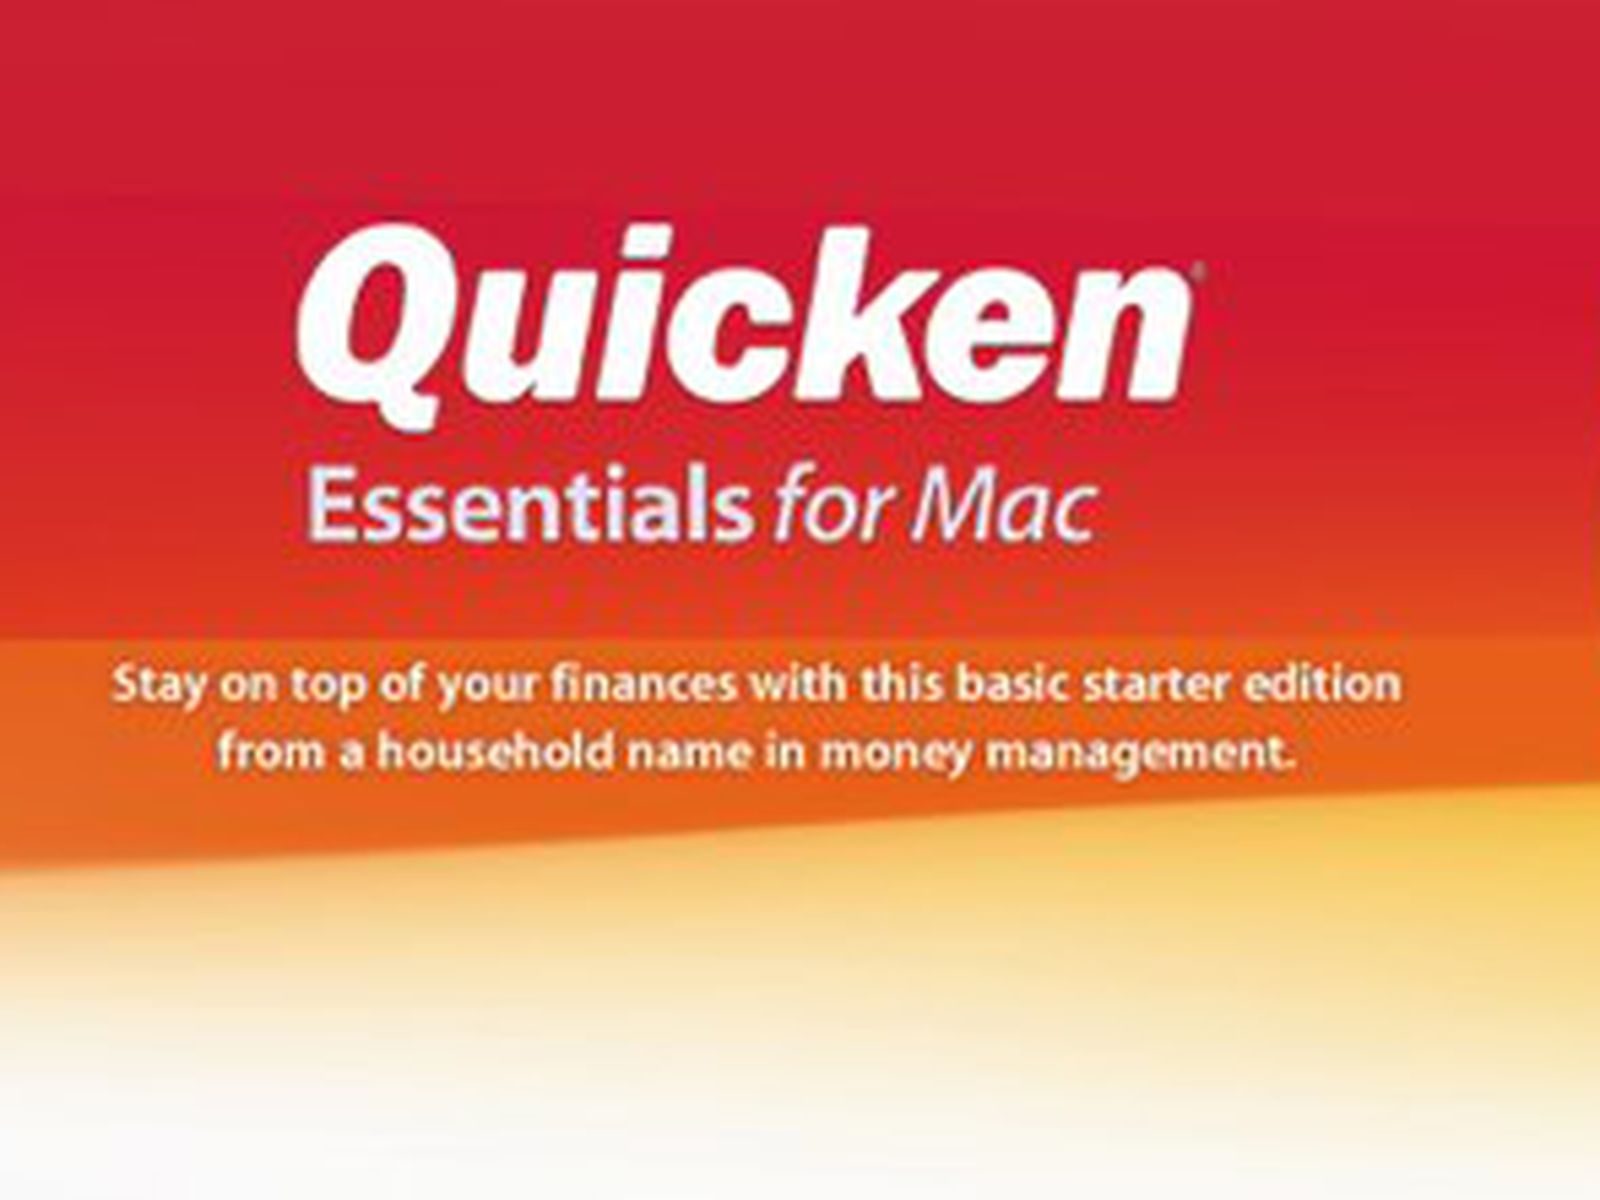 intuit for mac quicken